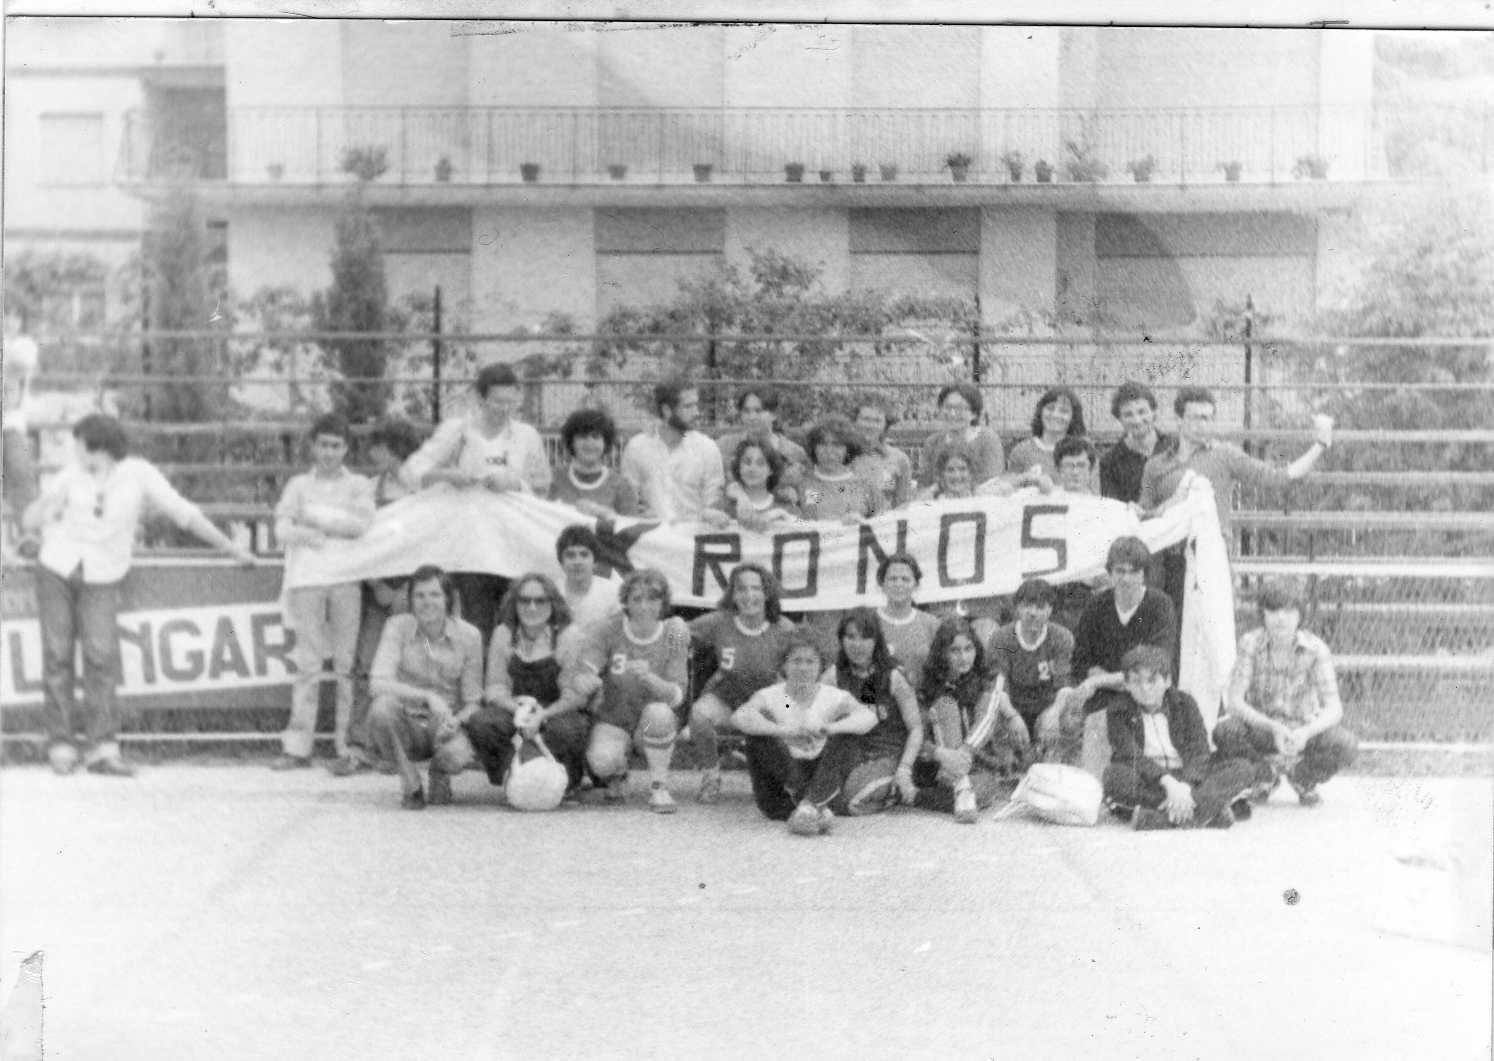 Le squadre di pallamano e atletica del Kronos - Formia, aprile 1978